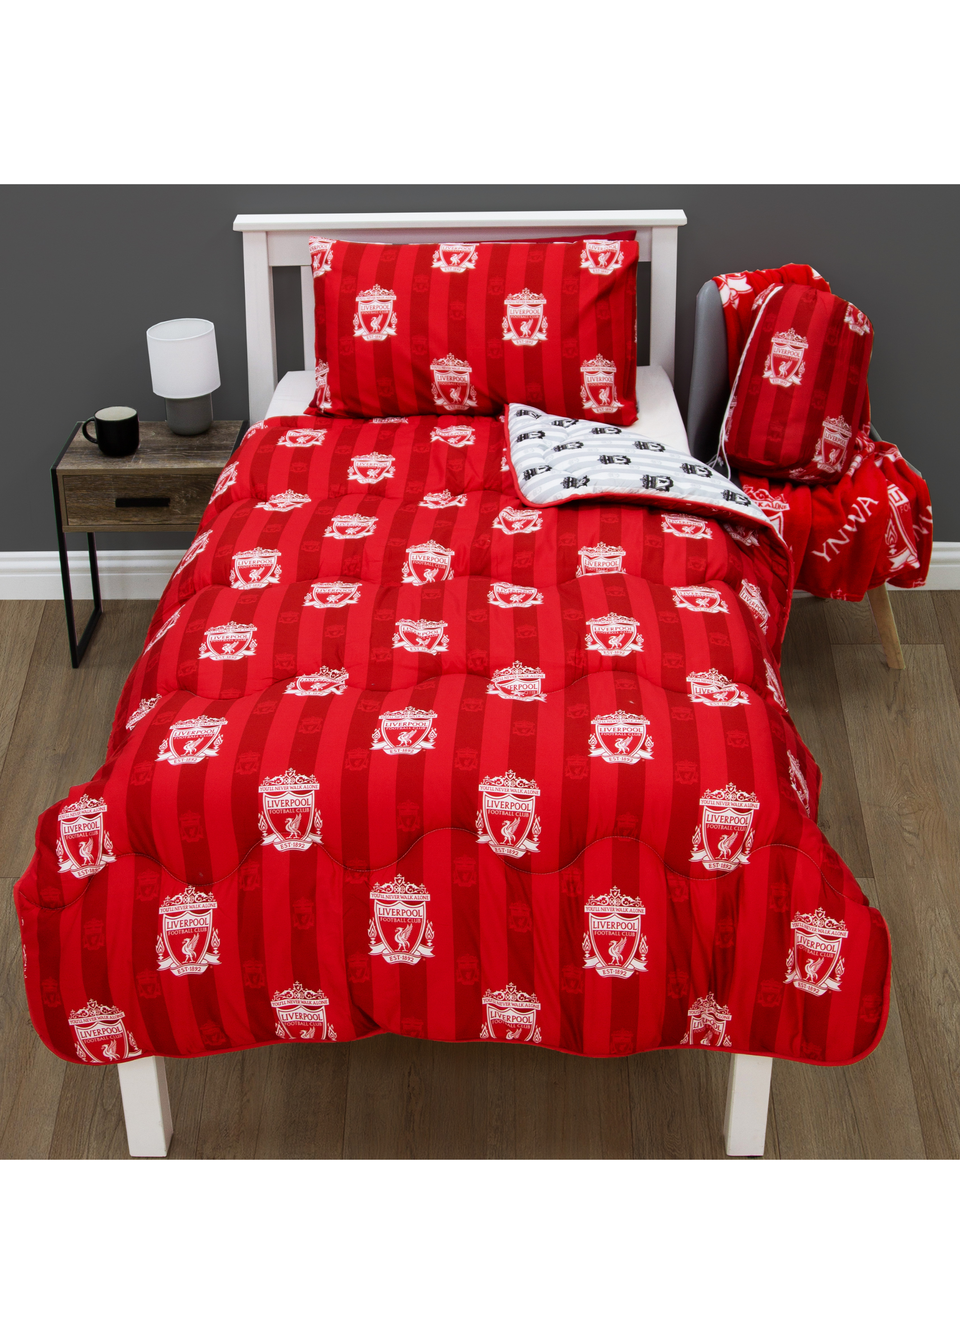 Liverpool FC Пуховое одеяло в полоску постельное белье forest kids одеяло и подушка комплект наволочек пододеяльник